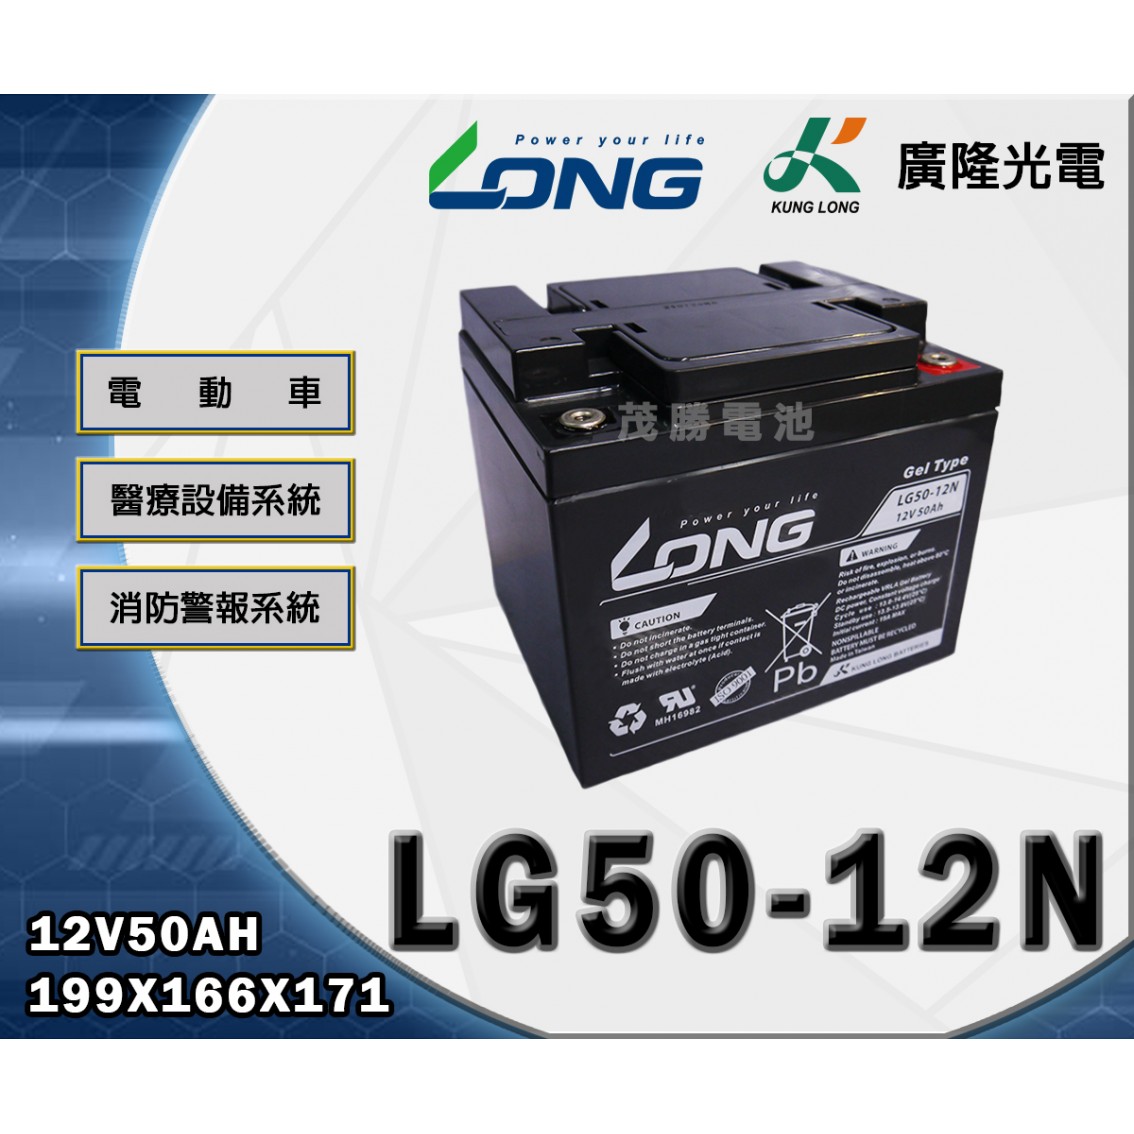 LG50-12N